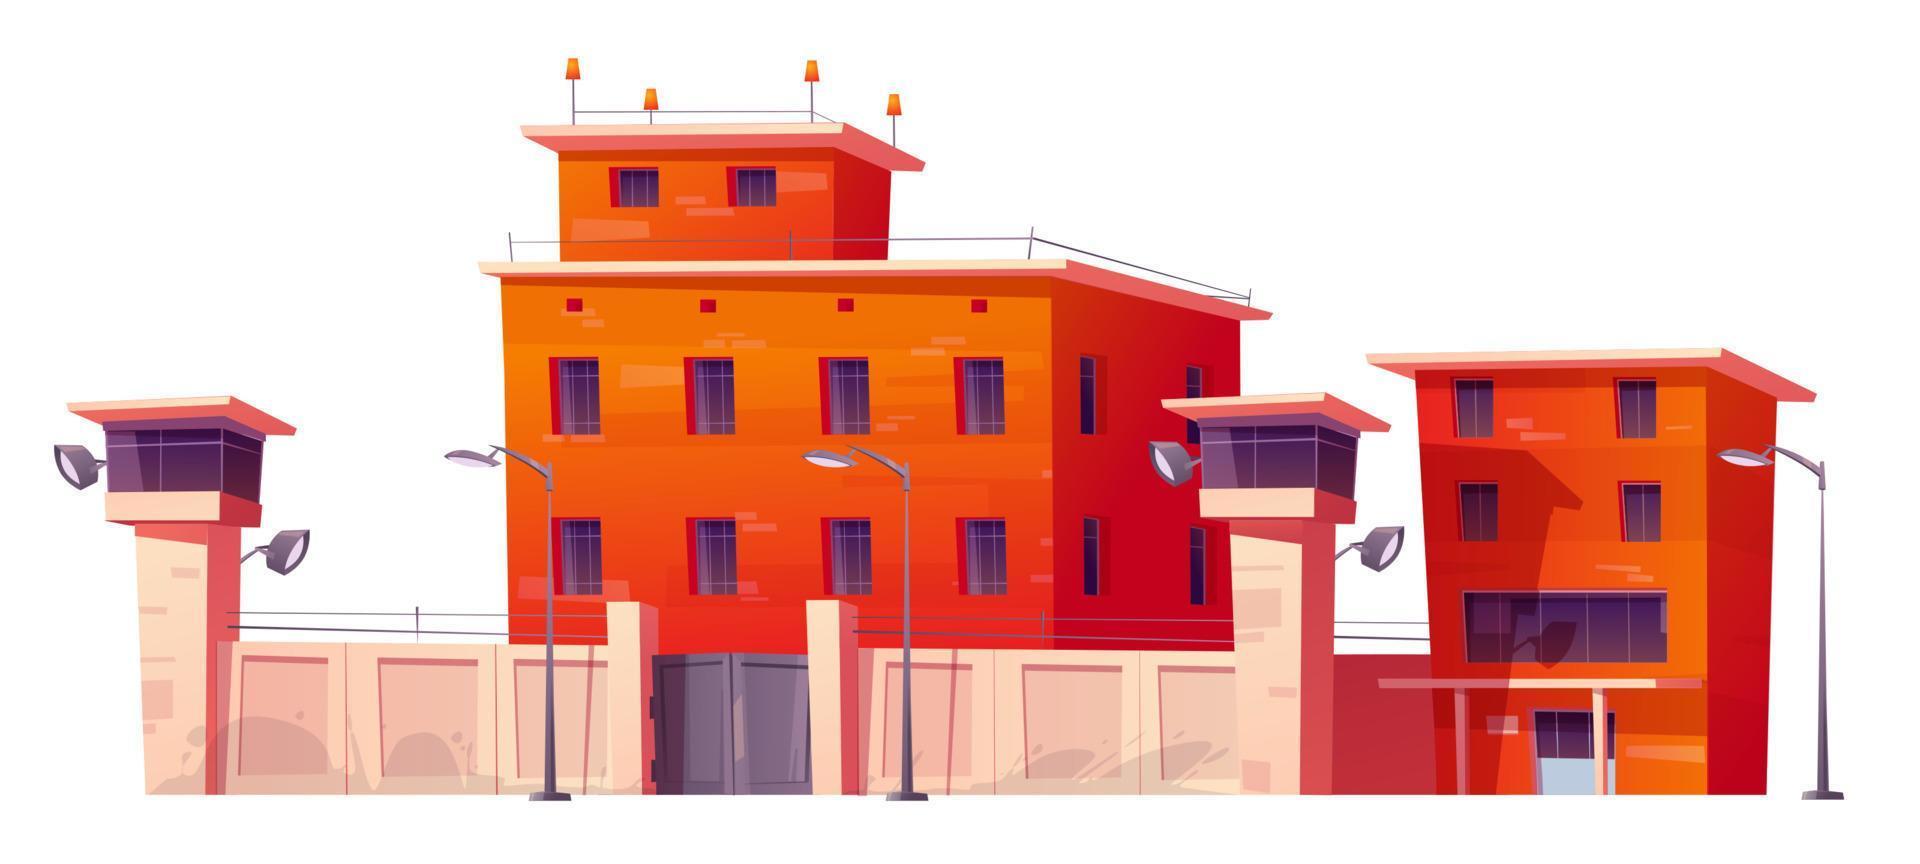 Gefängnisgebäude, Gefängnis mit Zaun und Wachtürmen vektor